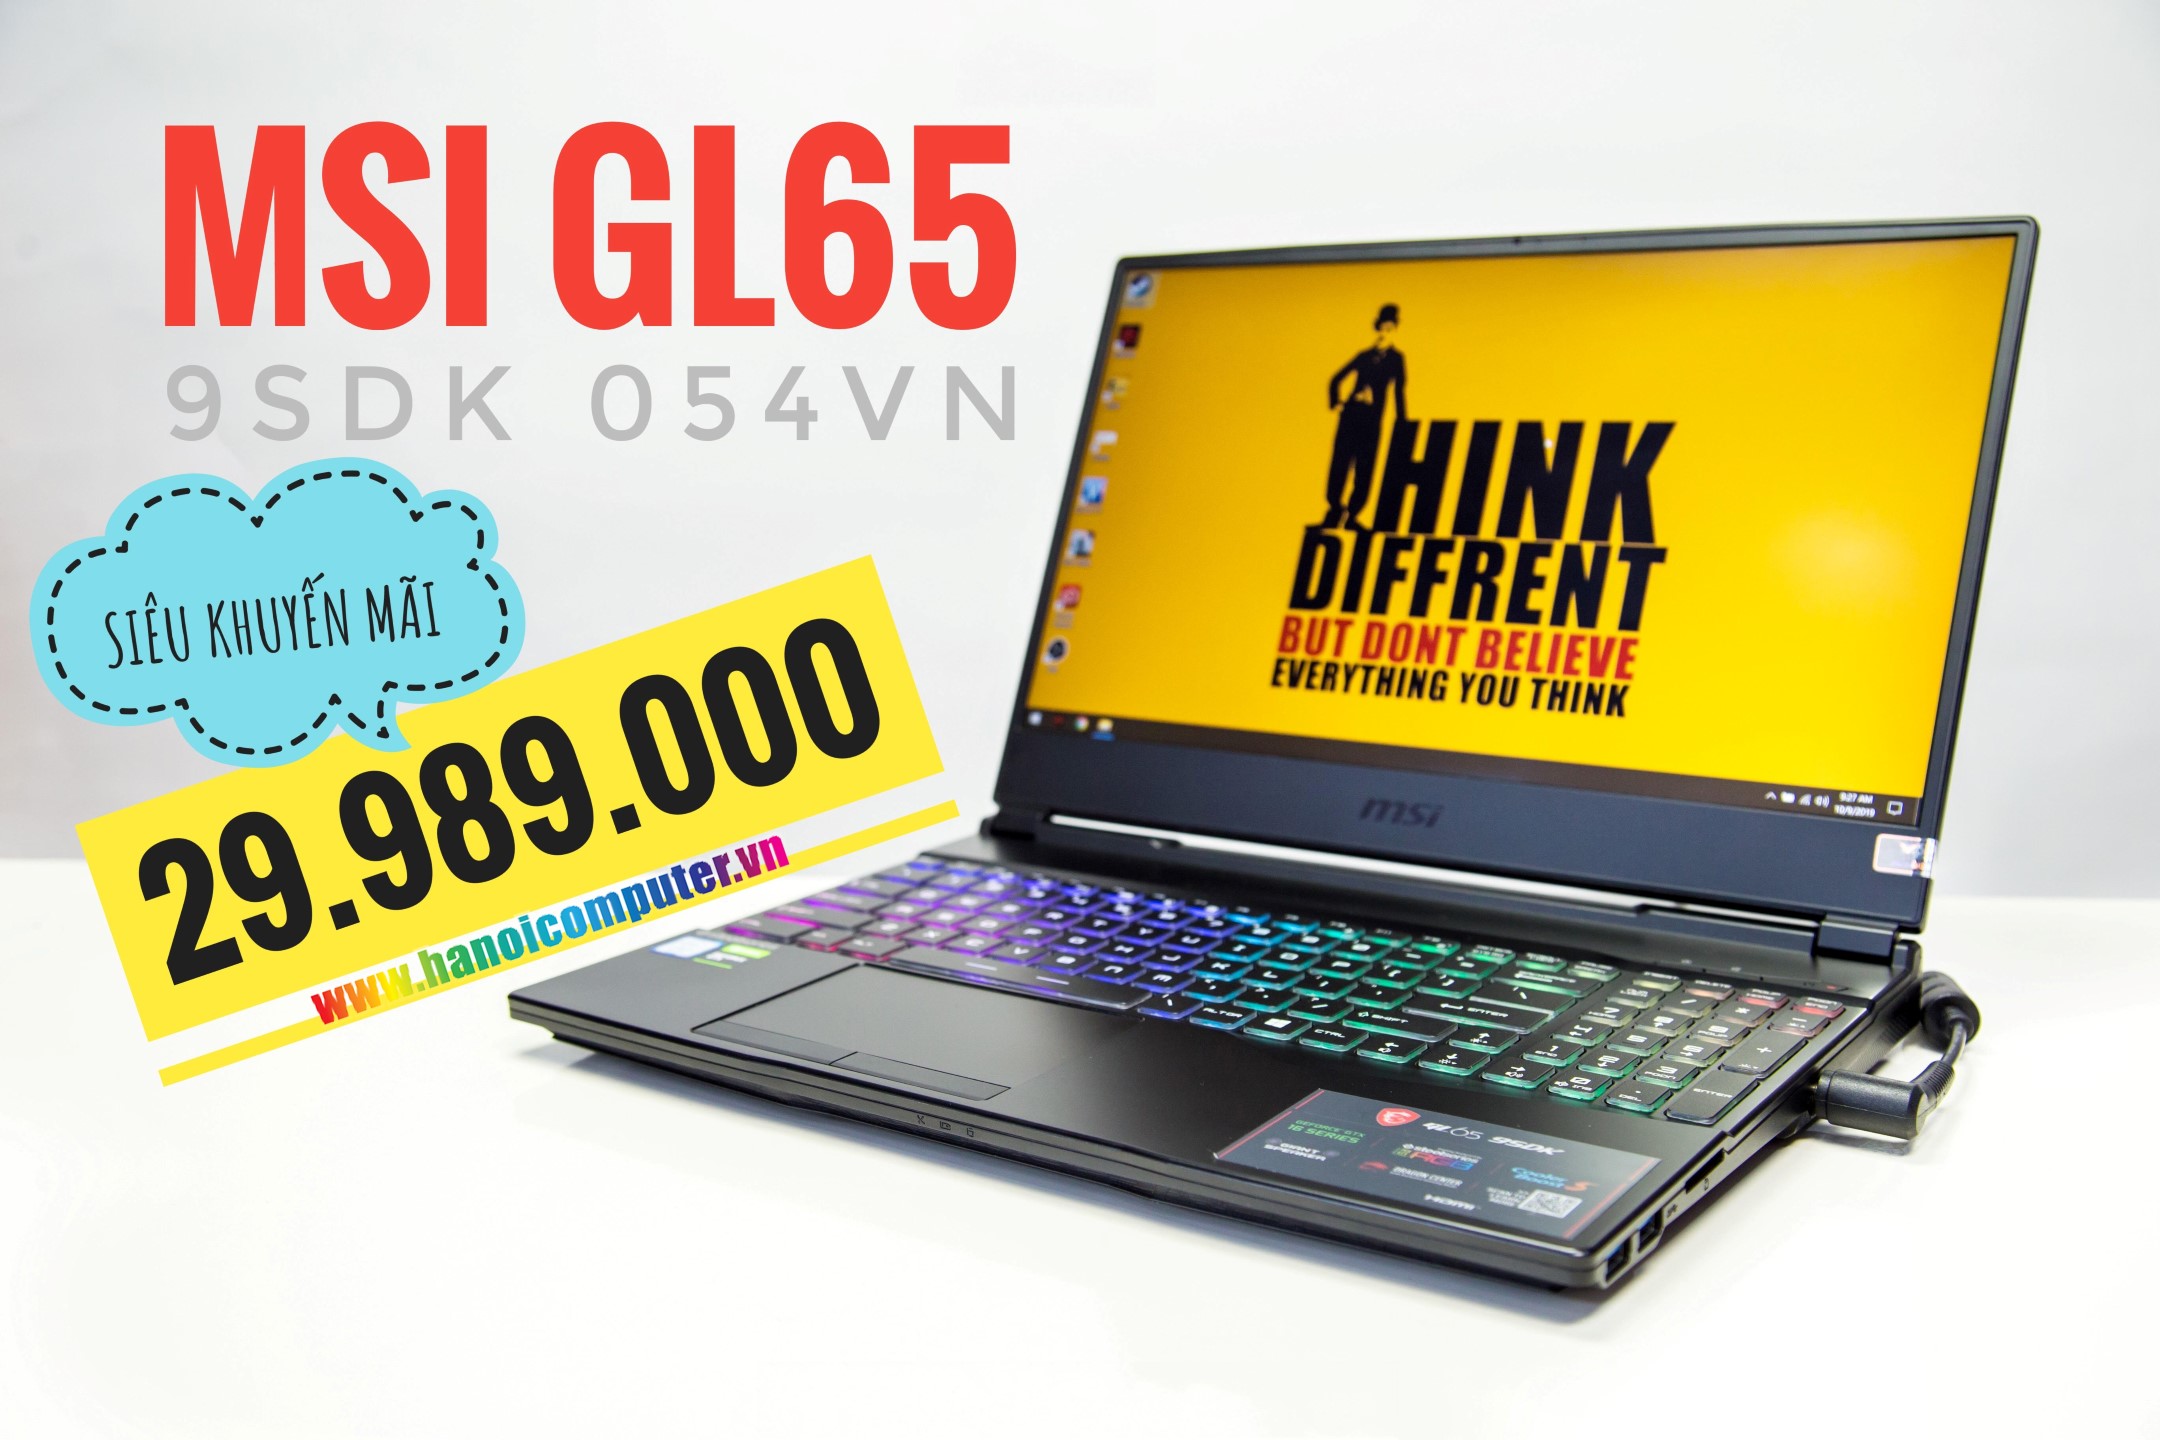 msi-gl65-9sdk-054vn-gaming-laptop